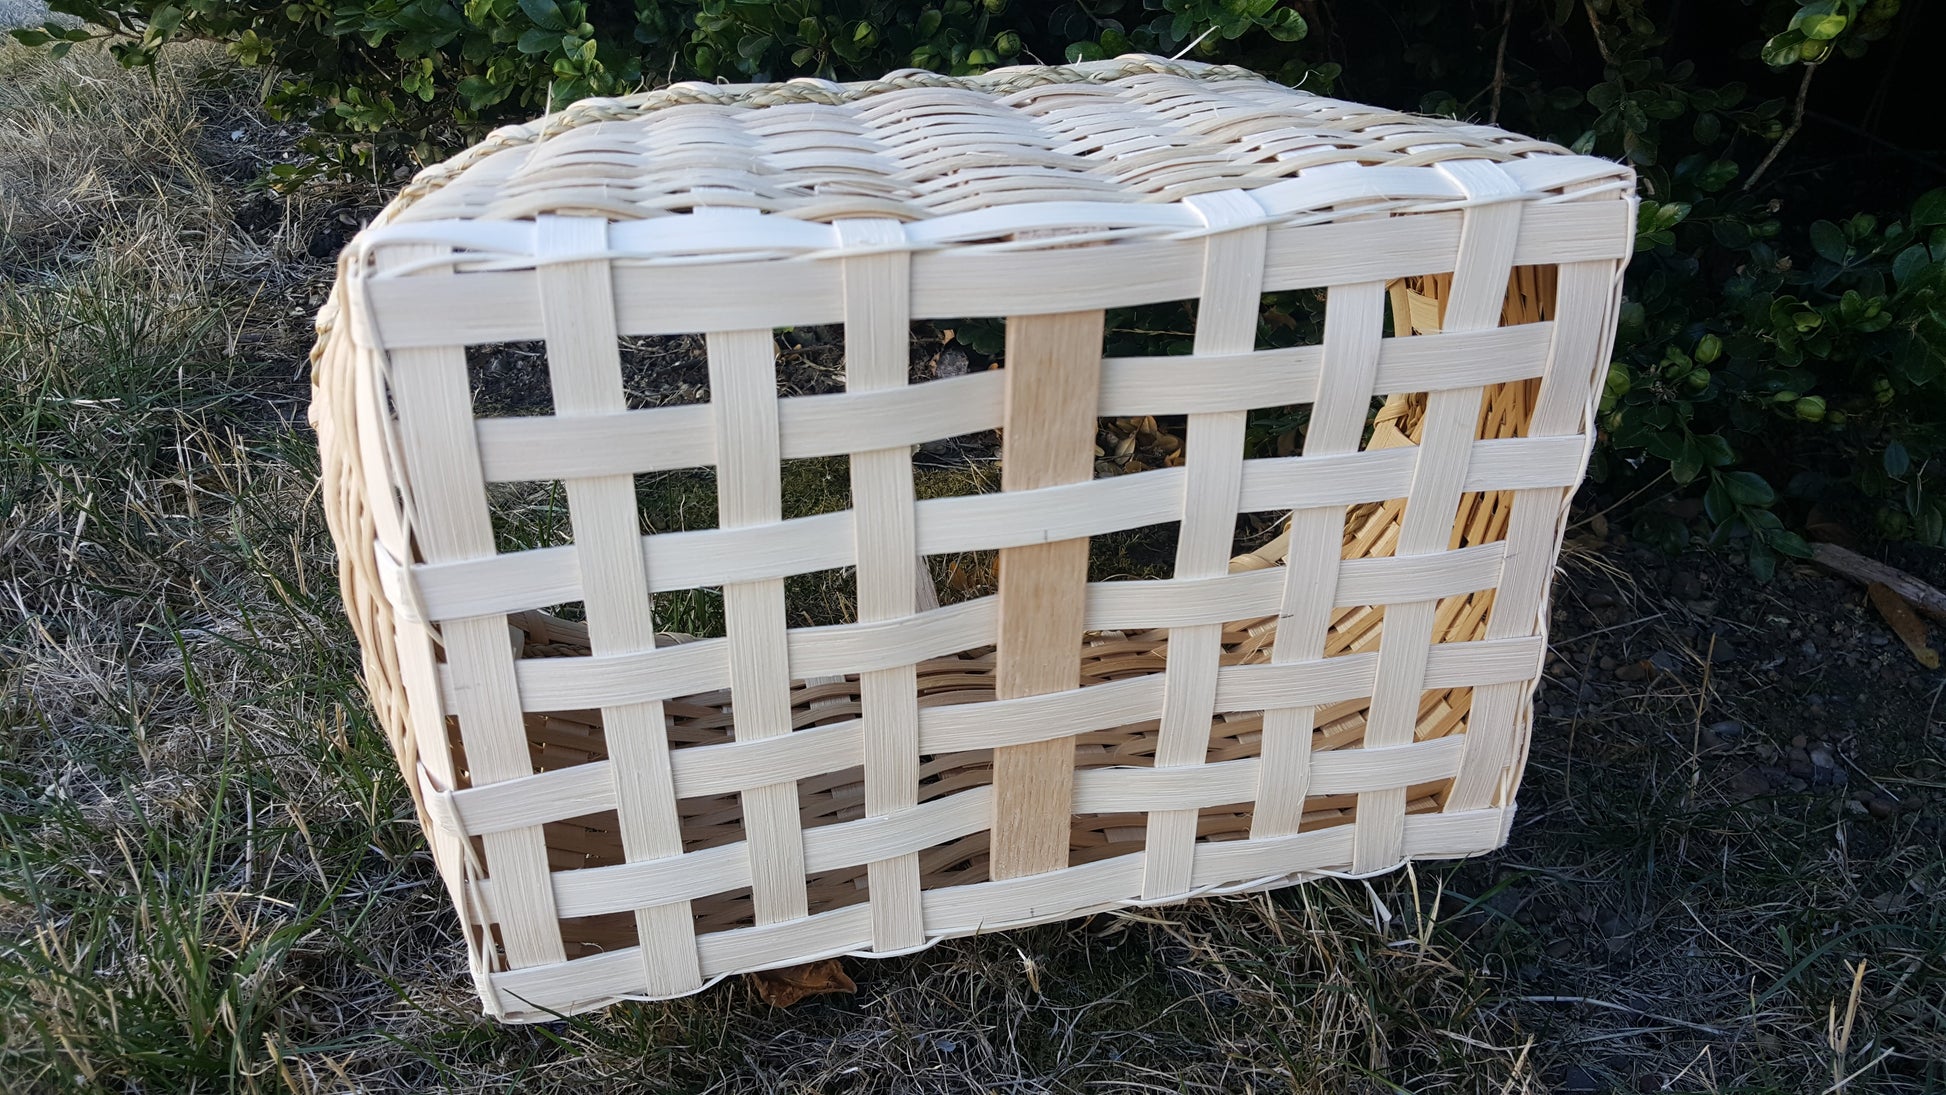 Handled Storage Basket Weaving Kit